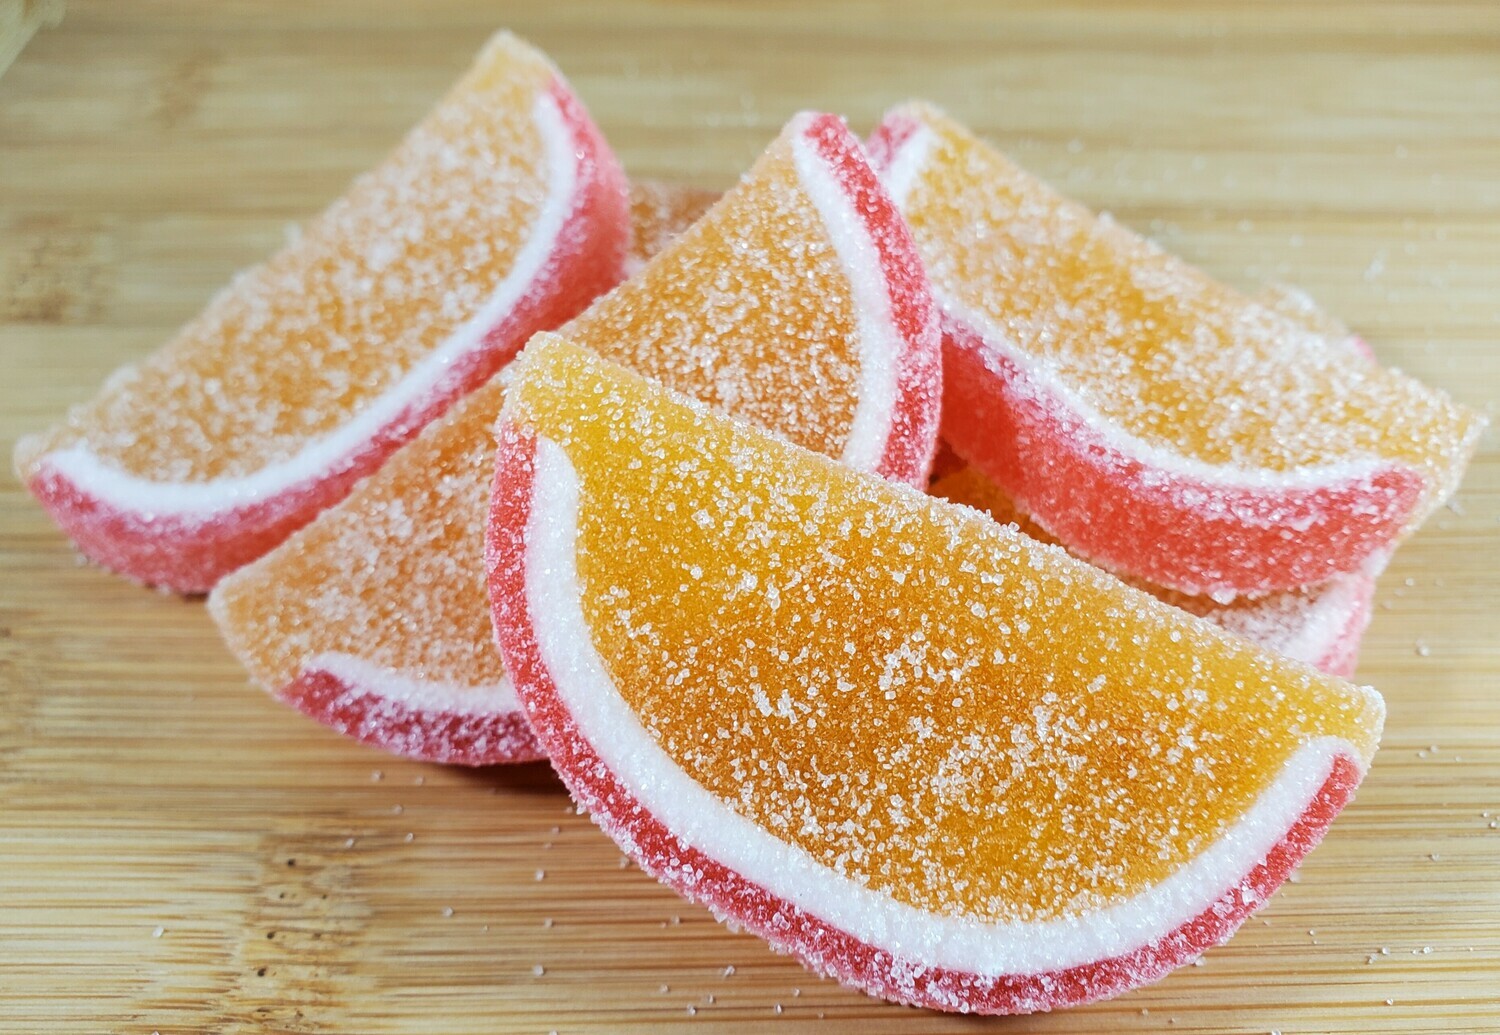 Gourmet Peach Flavor Jelly Fruit Slices